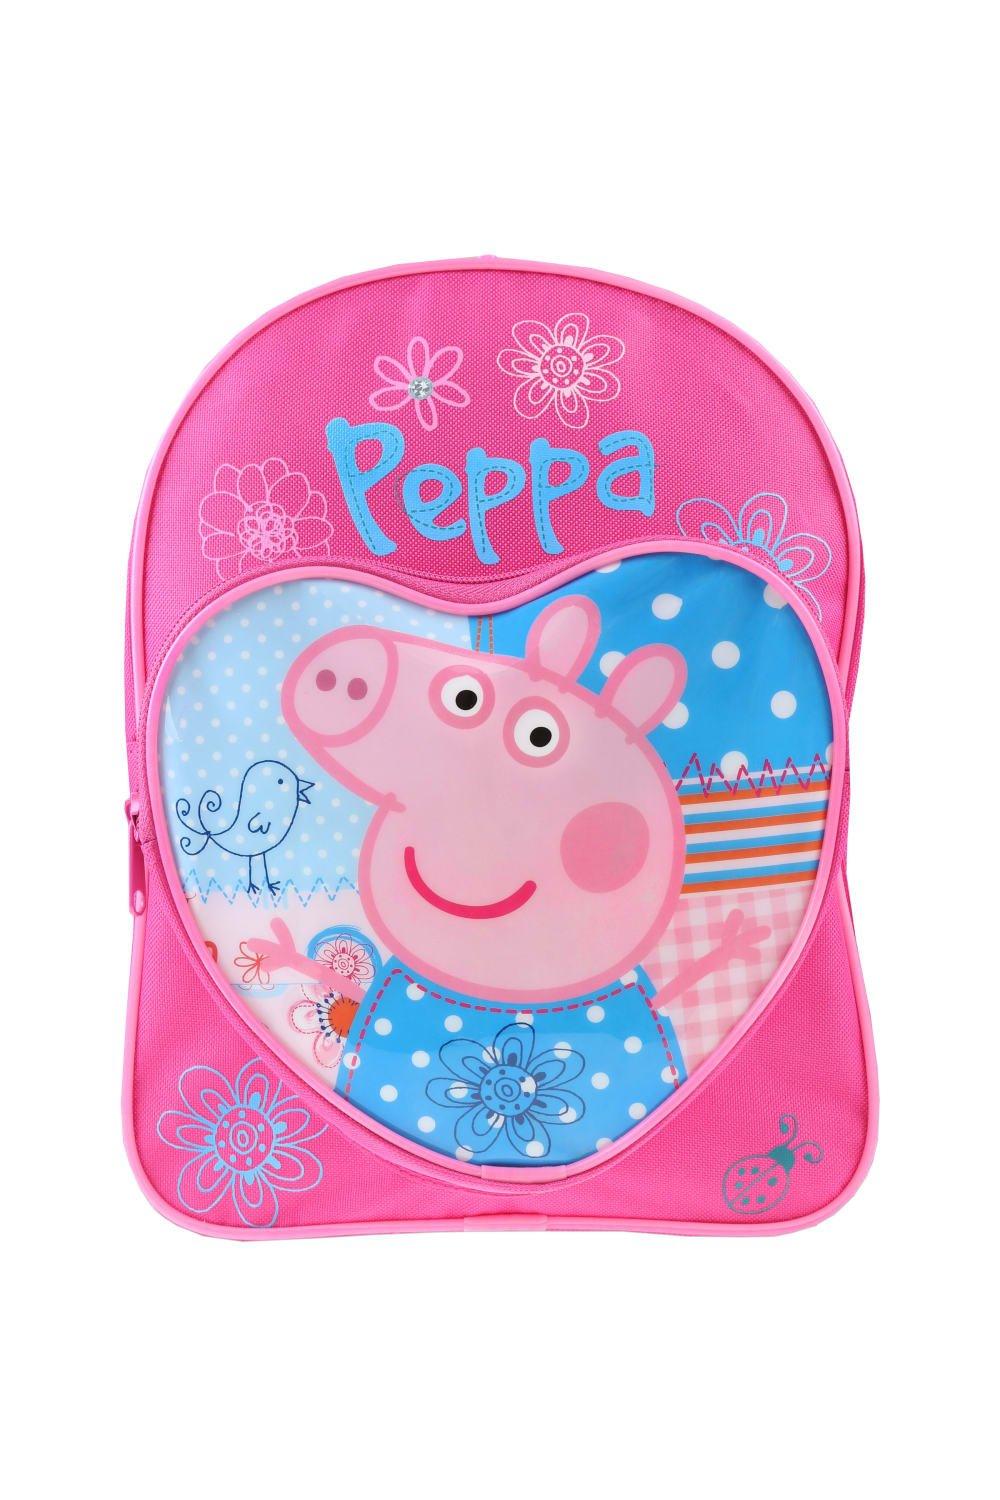 Детский рюкзак с карманом в форме сердца Peppa Pig, розовый пазлы alatoys свинка пеппа детская площадка пзл2023